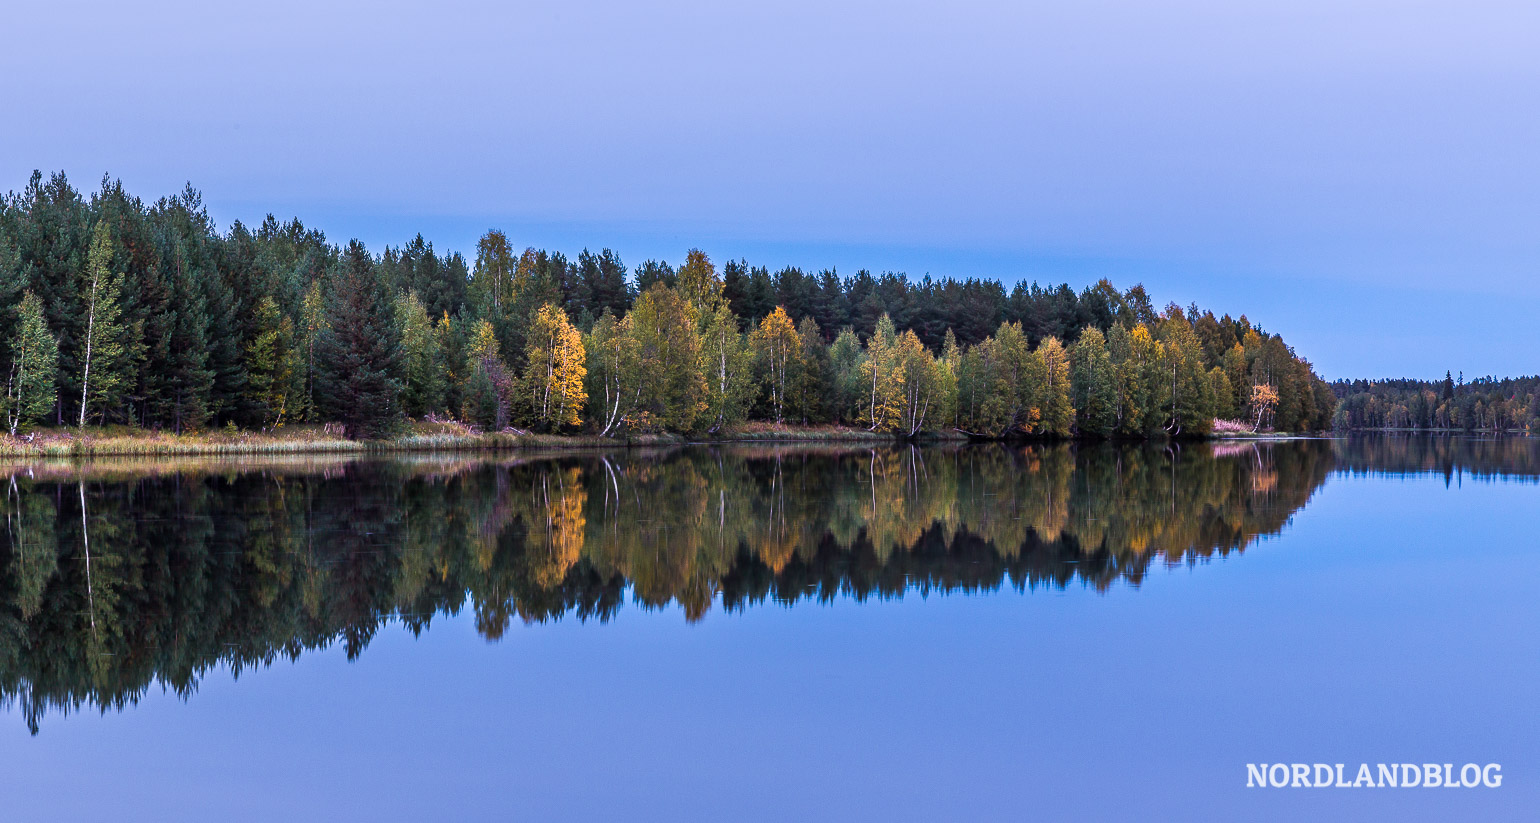 Herbst in Schweden an einem See - auf dem Weg nach Nordnorwegen 